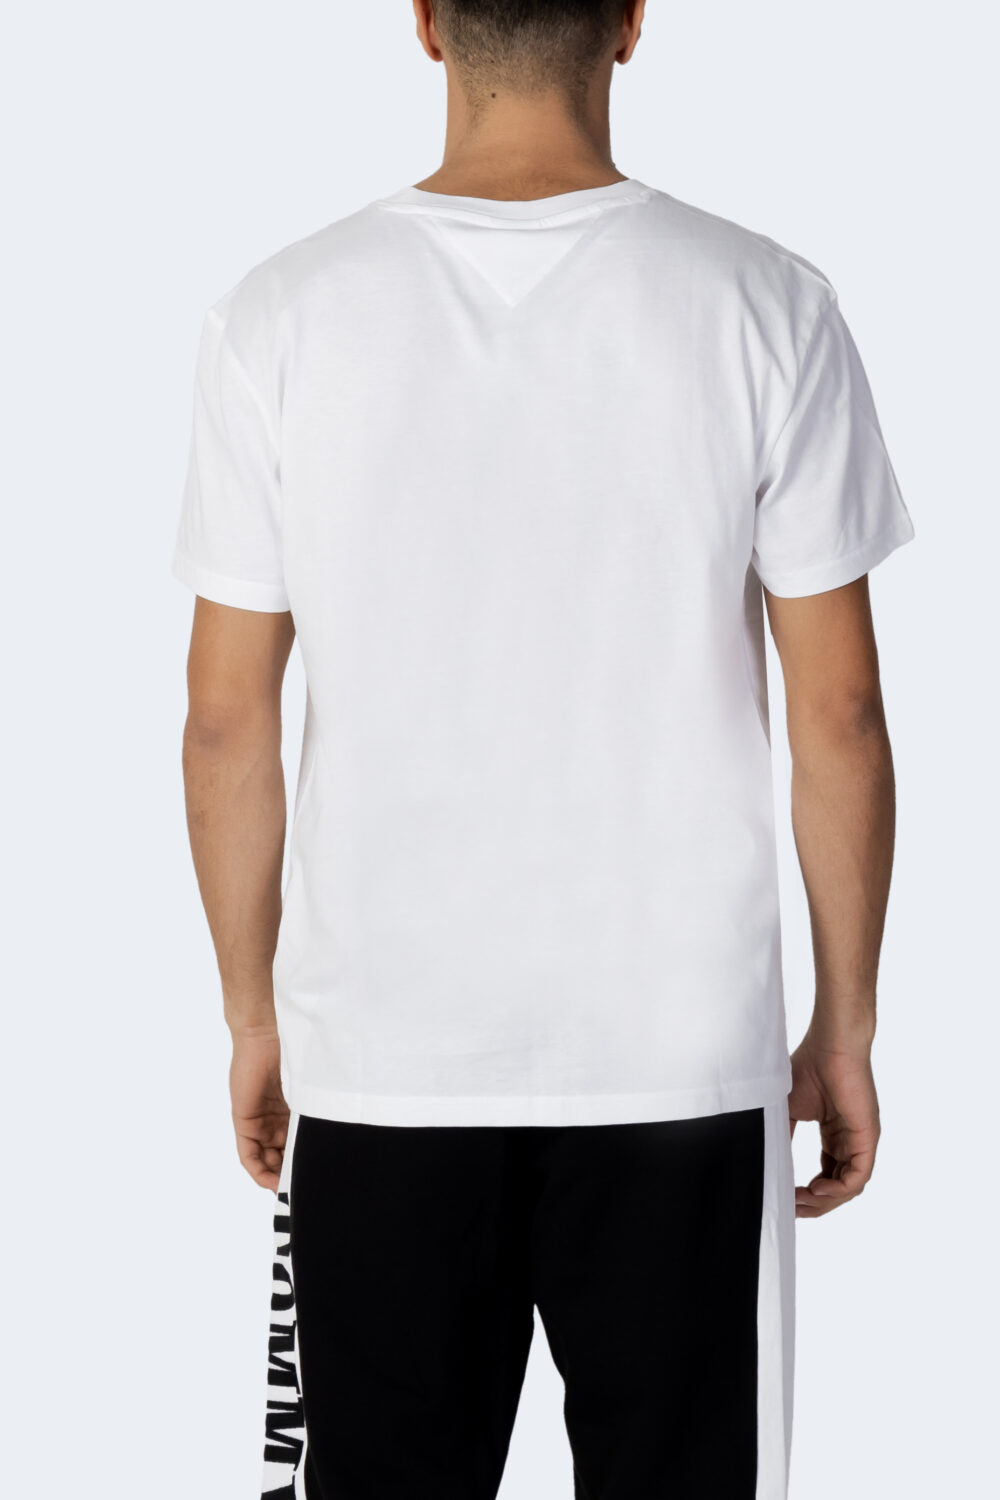 T-shirt Tommy Hilfiger Jeans TJM CLASSIC LINEAR L Bianco - Foto 3